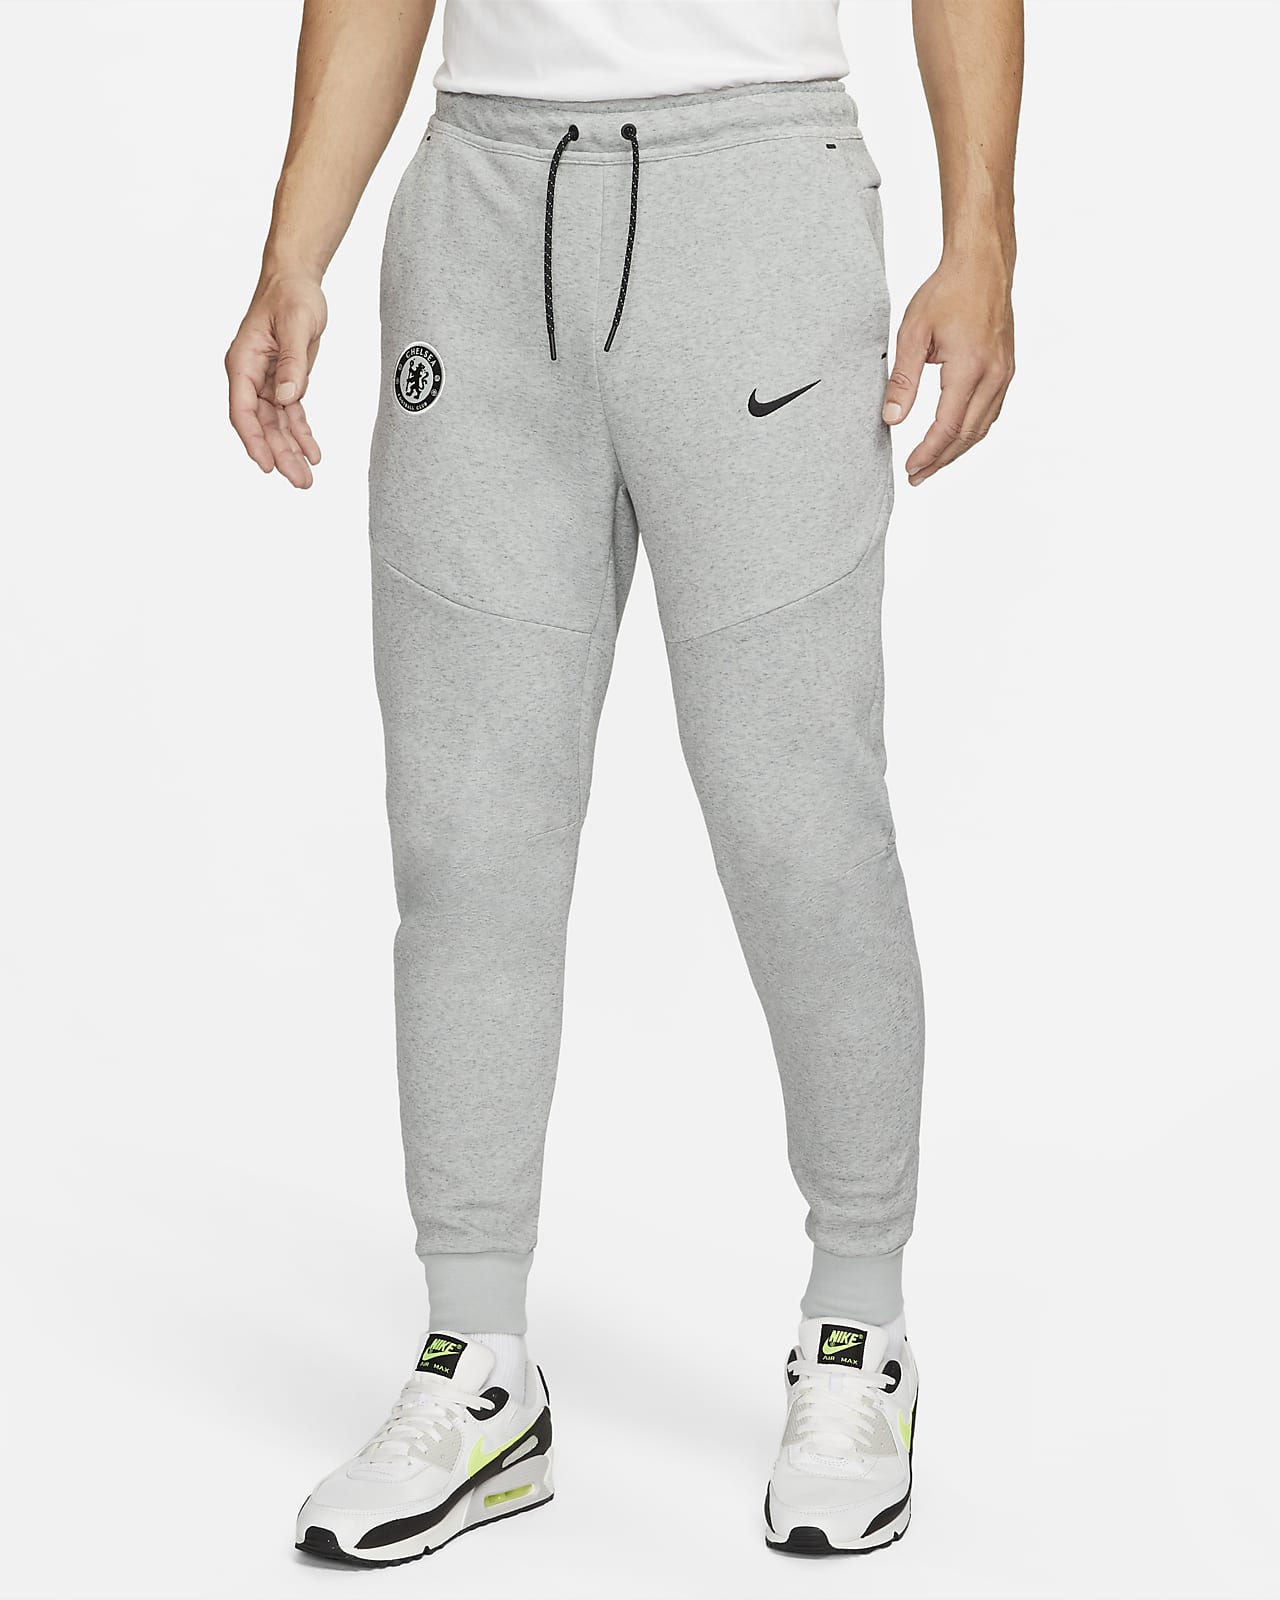 Nike Men Tech Fleece Air Max Top XL Jogger Pant S Matching Set Sweatsuit 